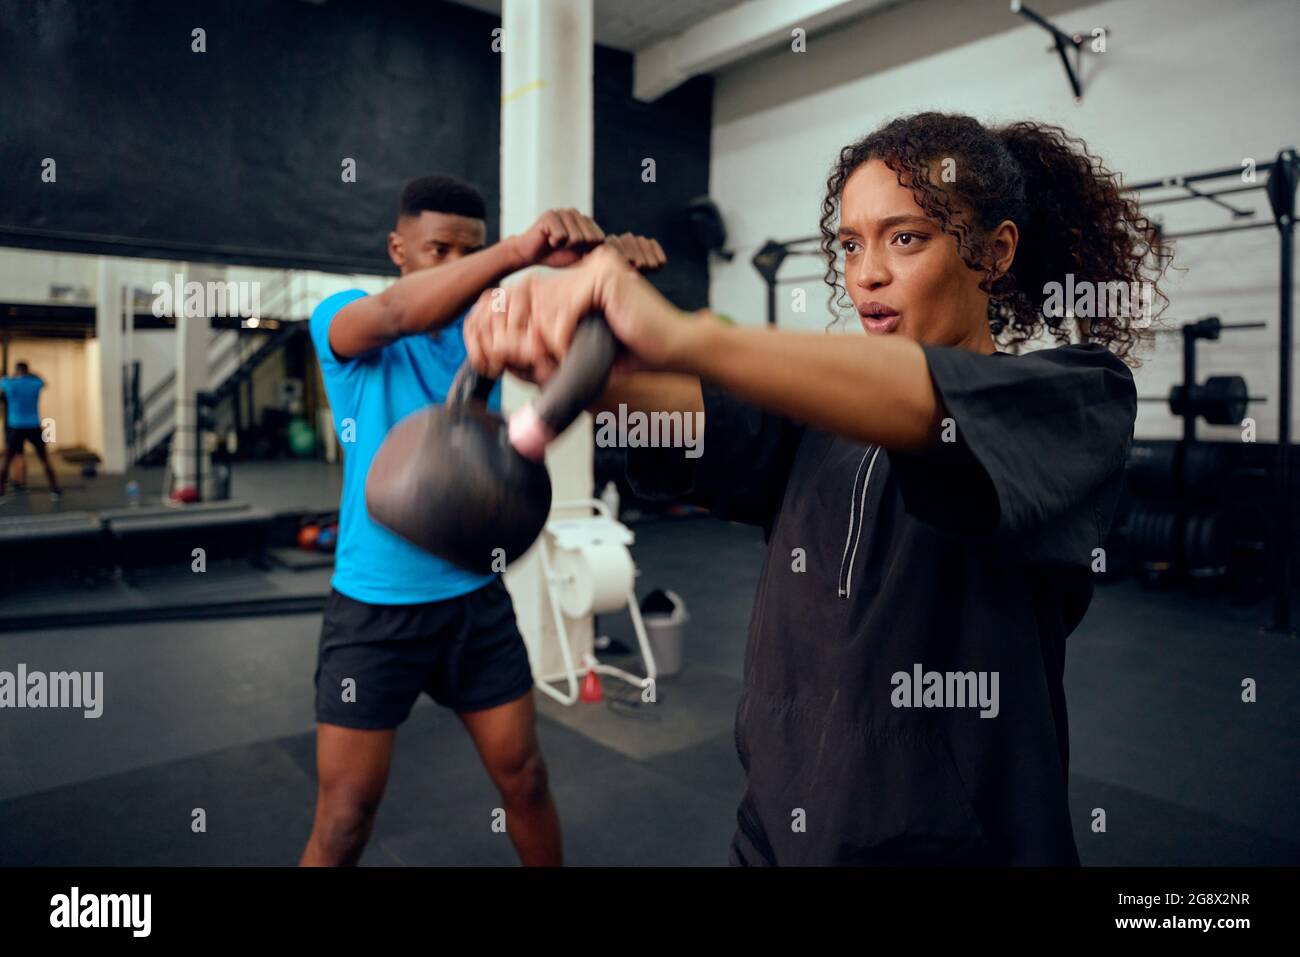 Entraîneur personnel afro-américain instruisant une femme afro-américaine avec une routine de kettlebell dans la salle de gym. Des amis de course mixtes qui font du cross Banque D'Images